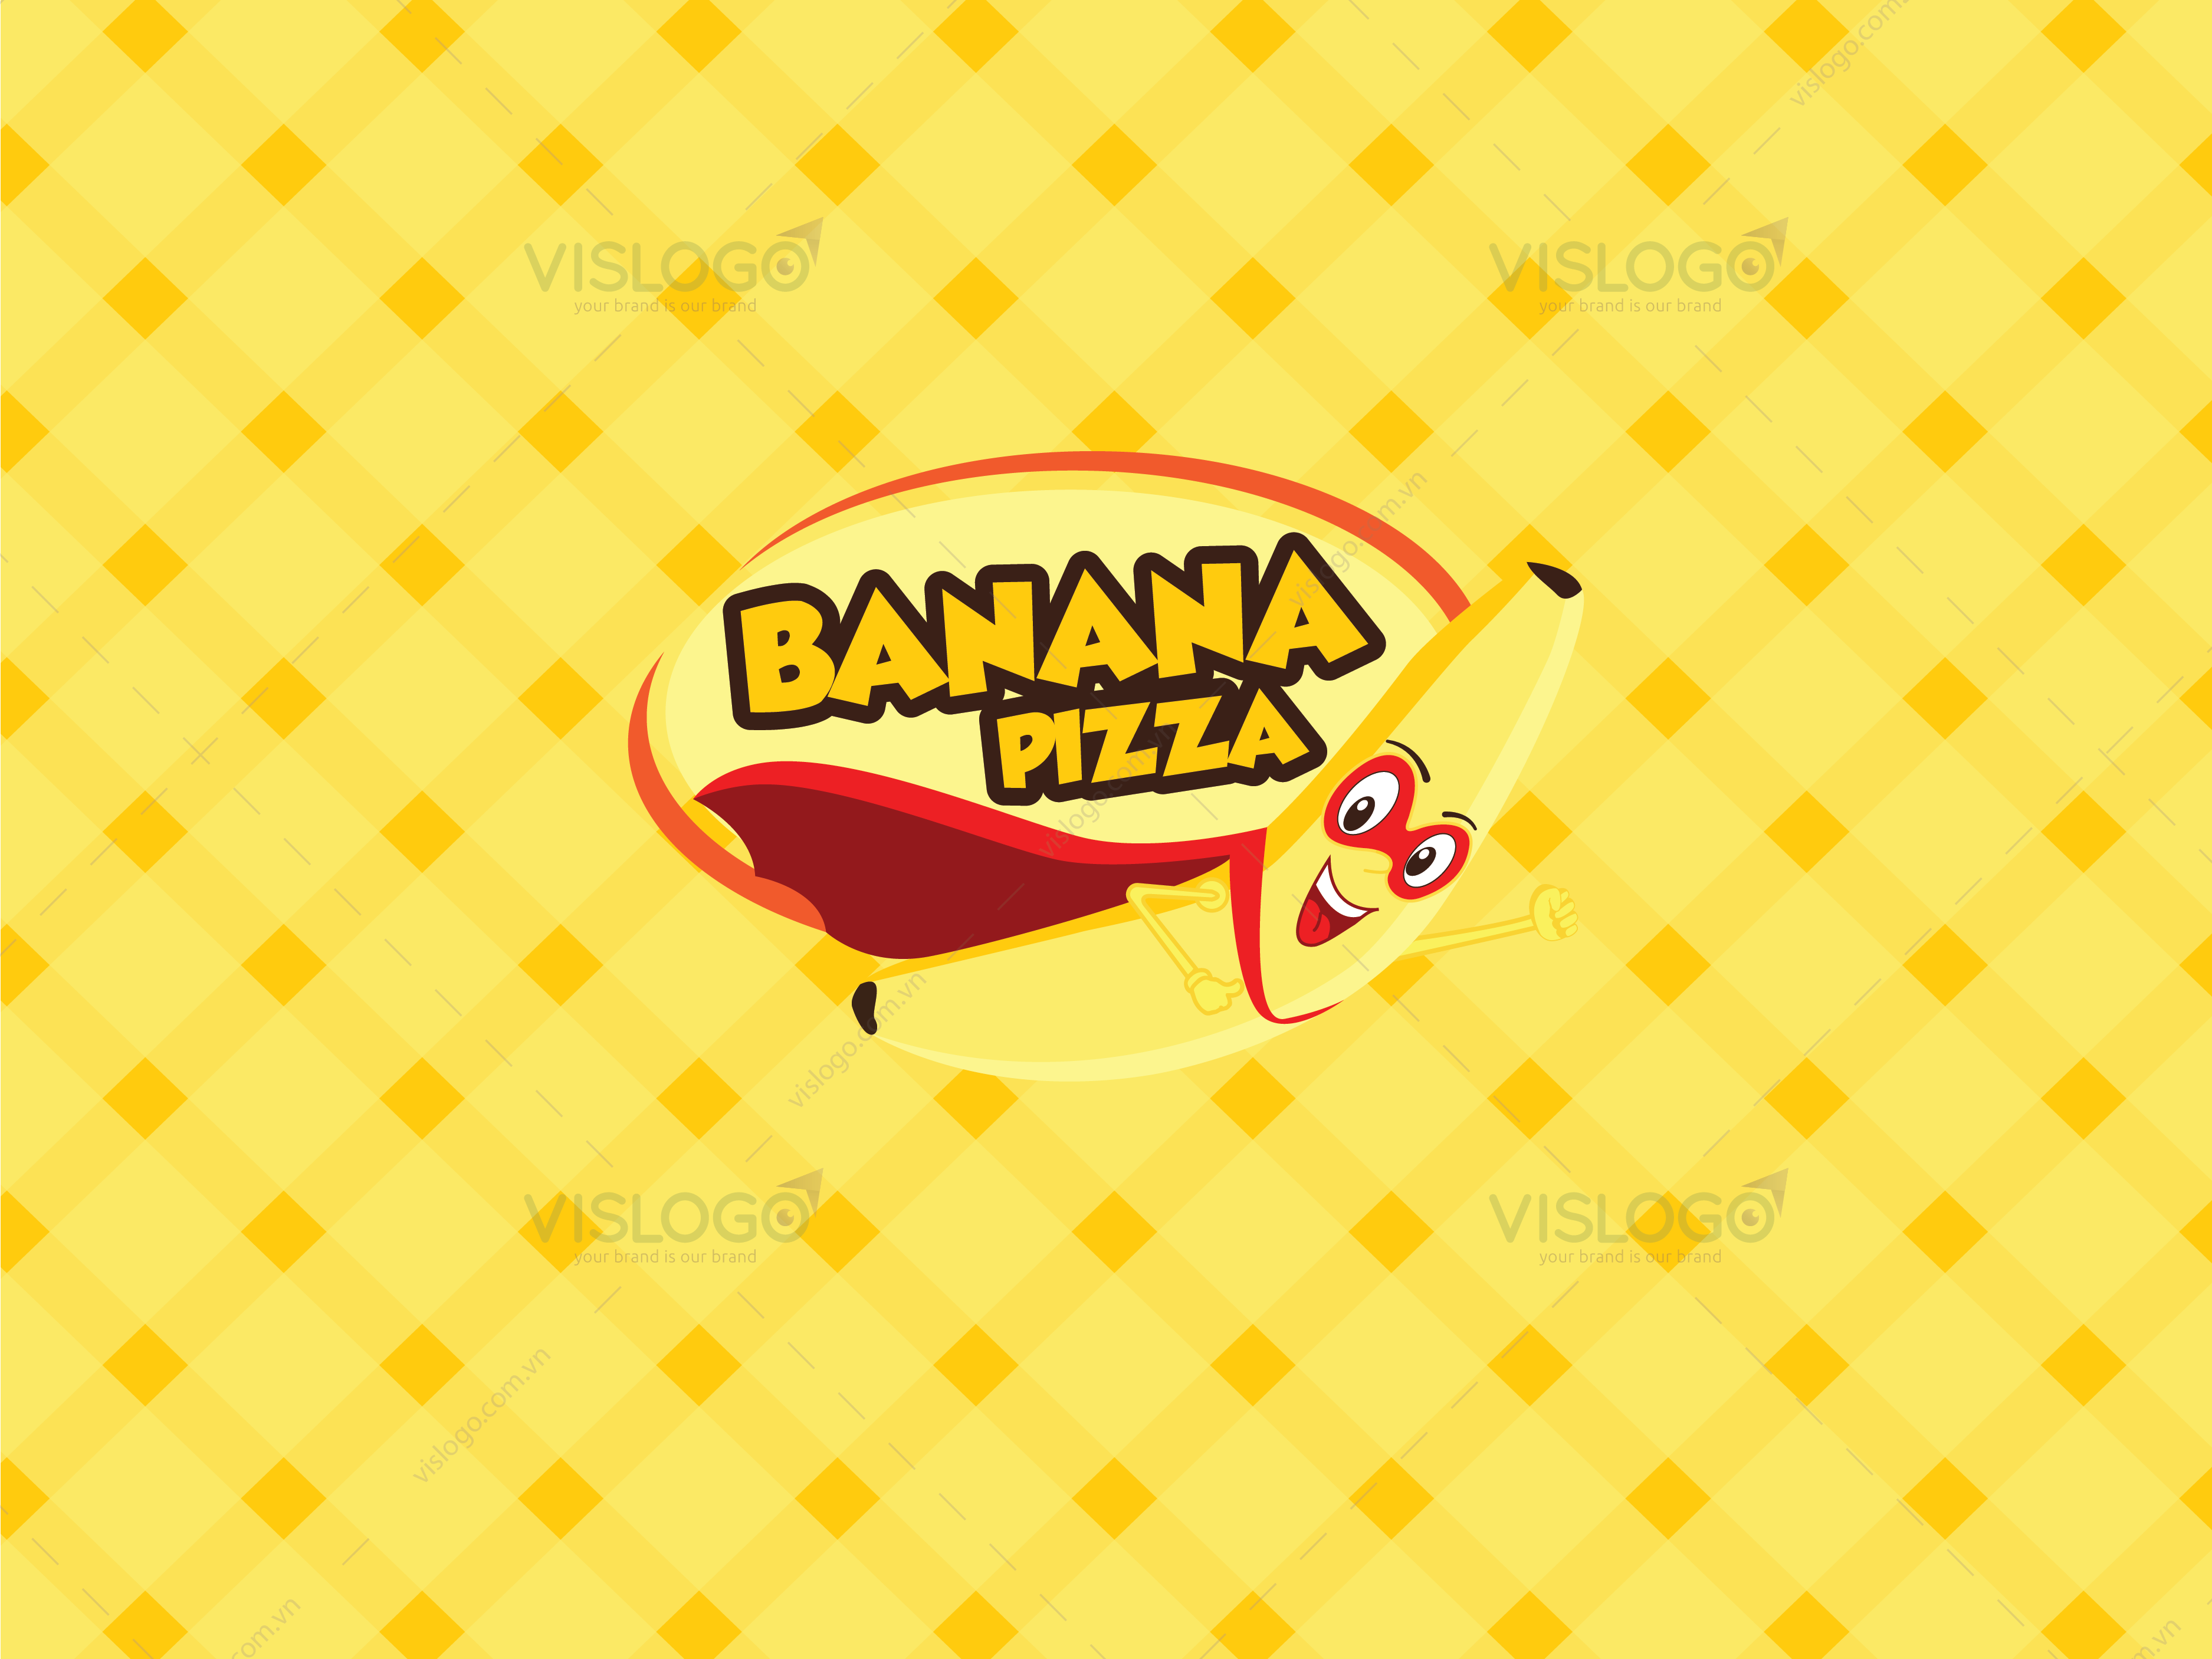 Thiết kế logo, ấn phẩm nhận diện BANANA PIZZA